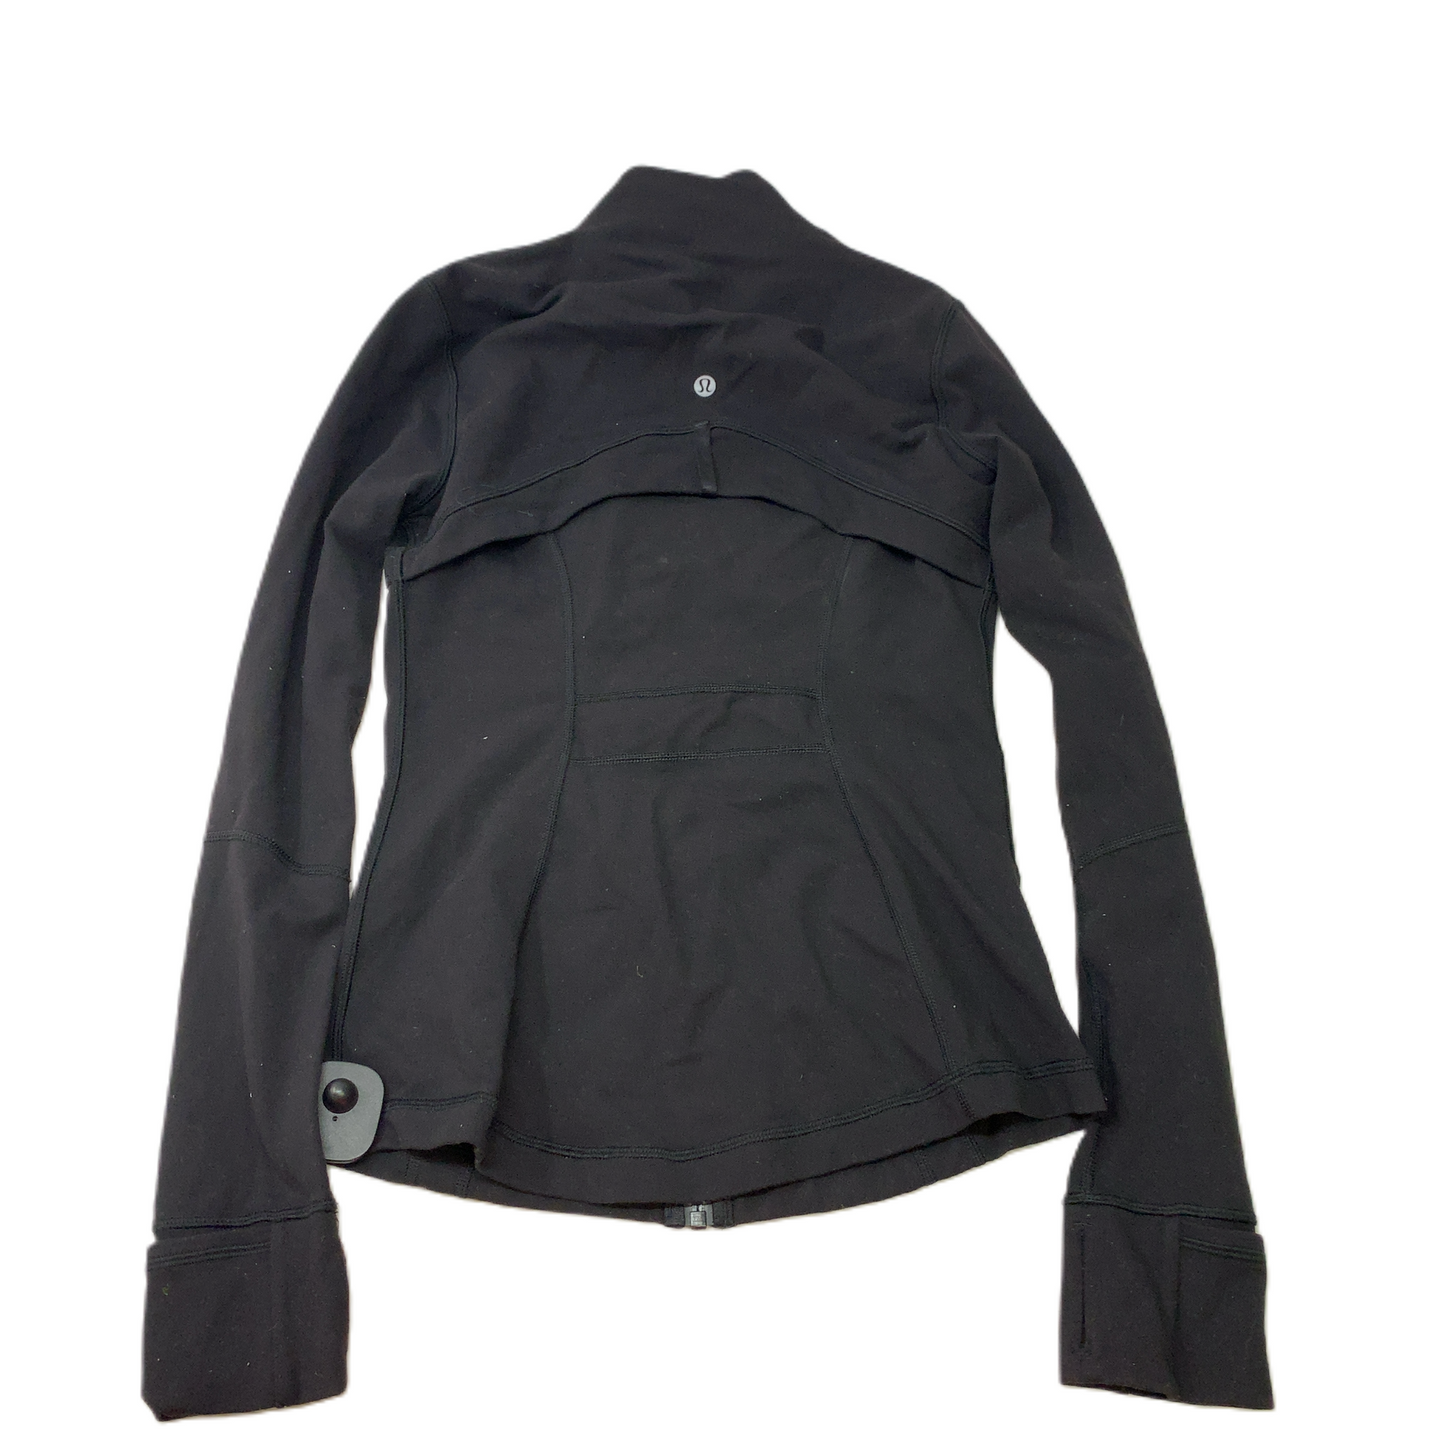 Black  Athletic Jacket By Lululemon  Size: S